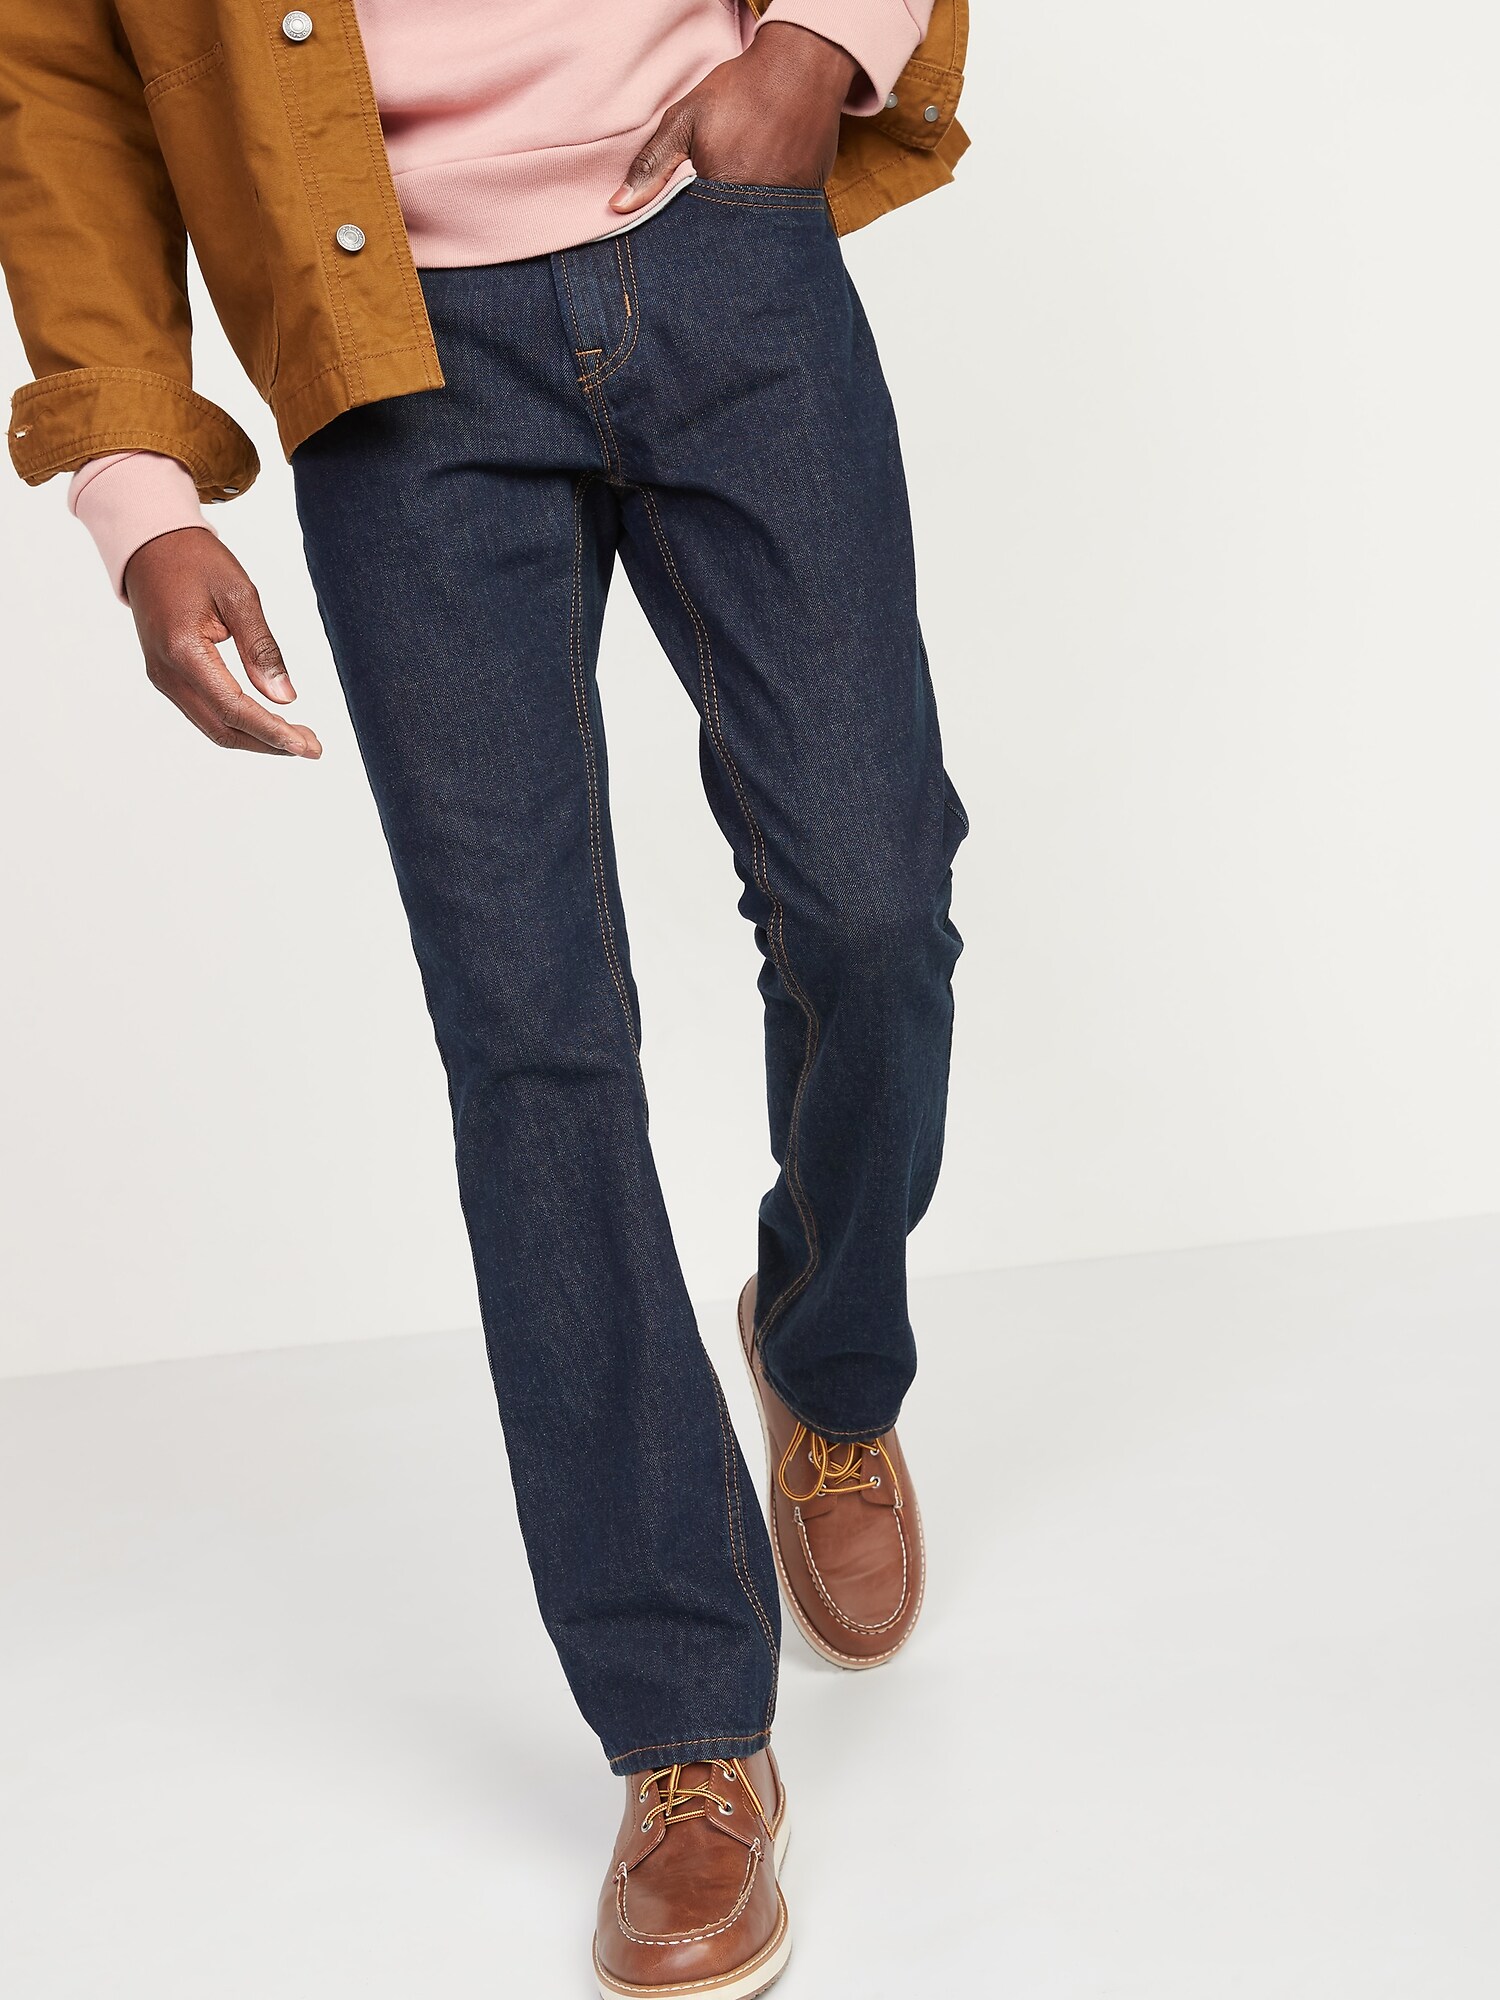 Rigid Boot-Cut Jeans For Men